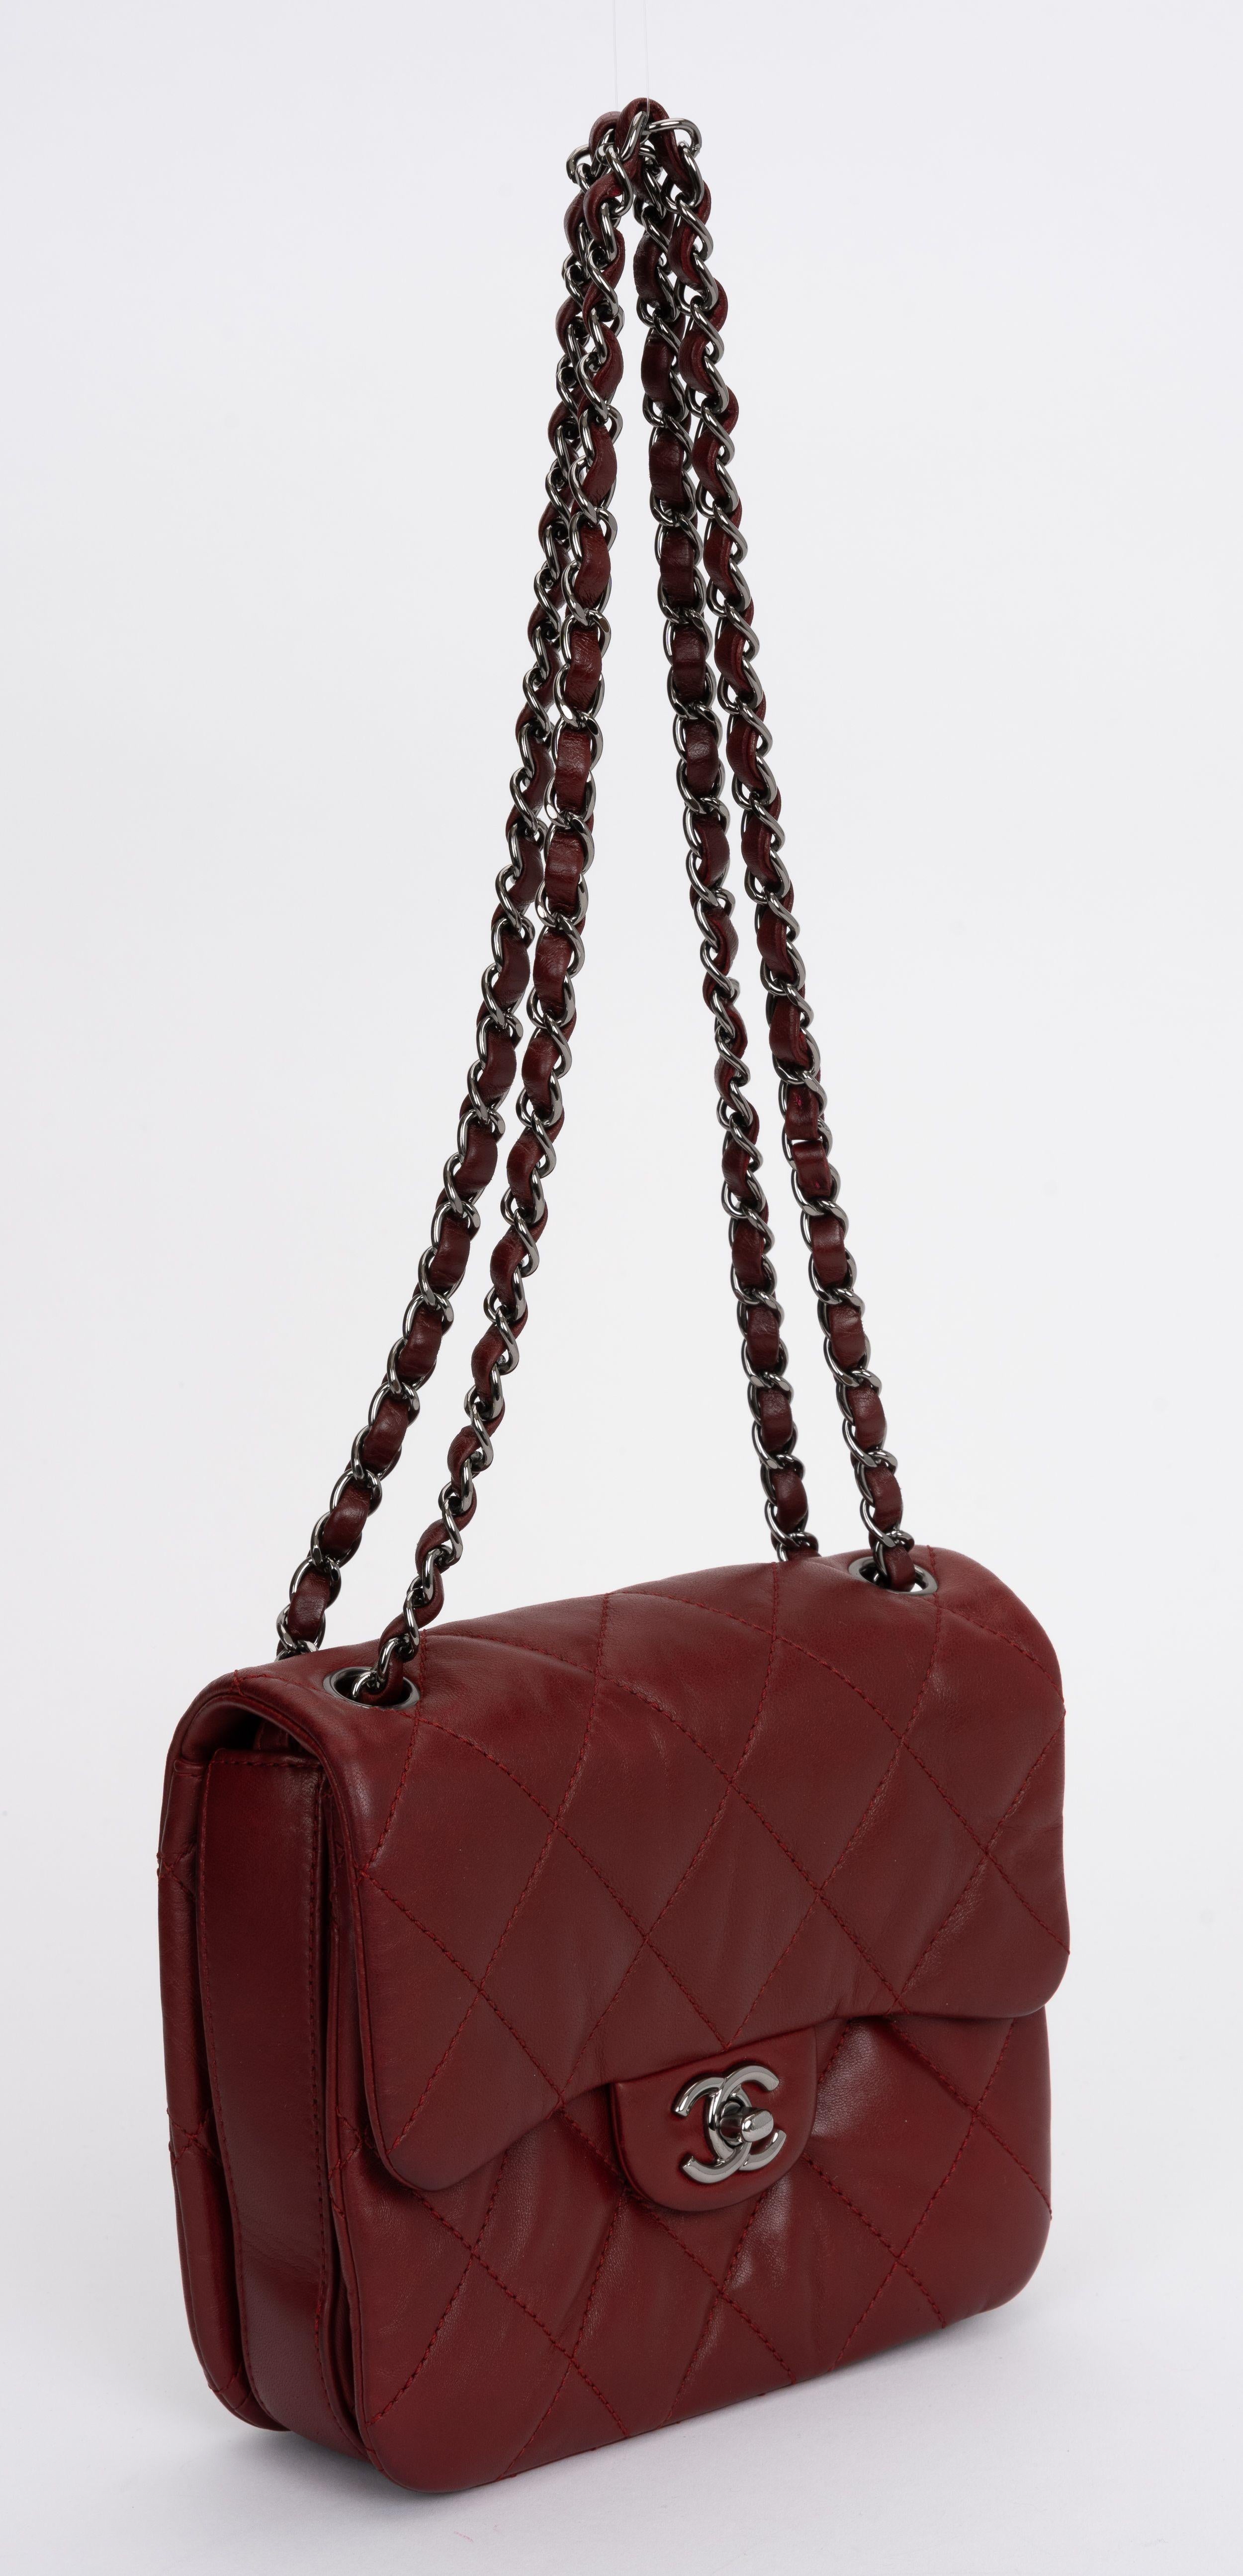 Die Chanel Burgundy Red Leder Flap Bag hat einen verschlungenen Schulterriemen aus Rotgussleder und einen CC-Drehverschluss. Eine Reißverschlusstasche im Inneren.
Kann über den Körper oder schulterlang getragen werden.
Schulterhöhe 11,5